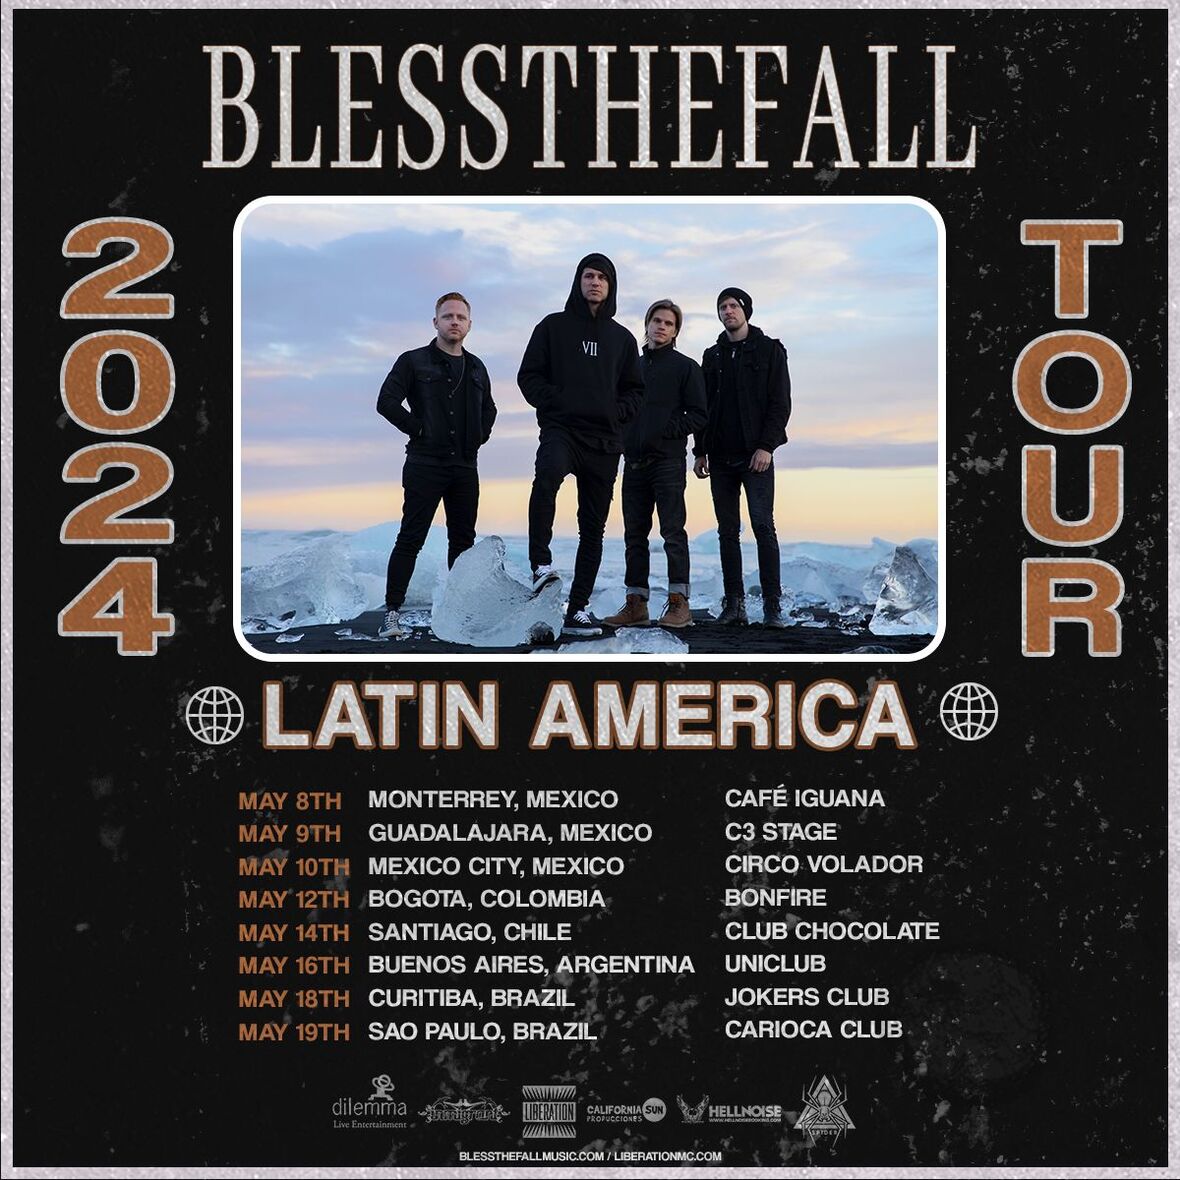 Blessthefall confirma nova turnê pela América Latina em maio